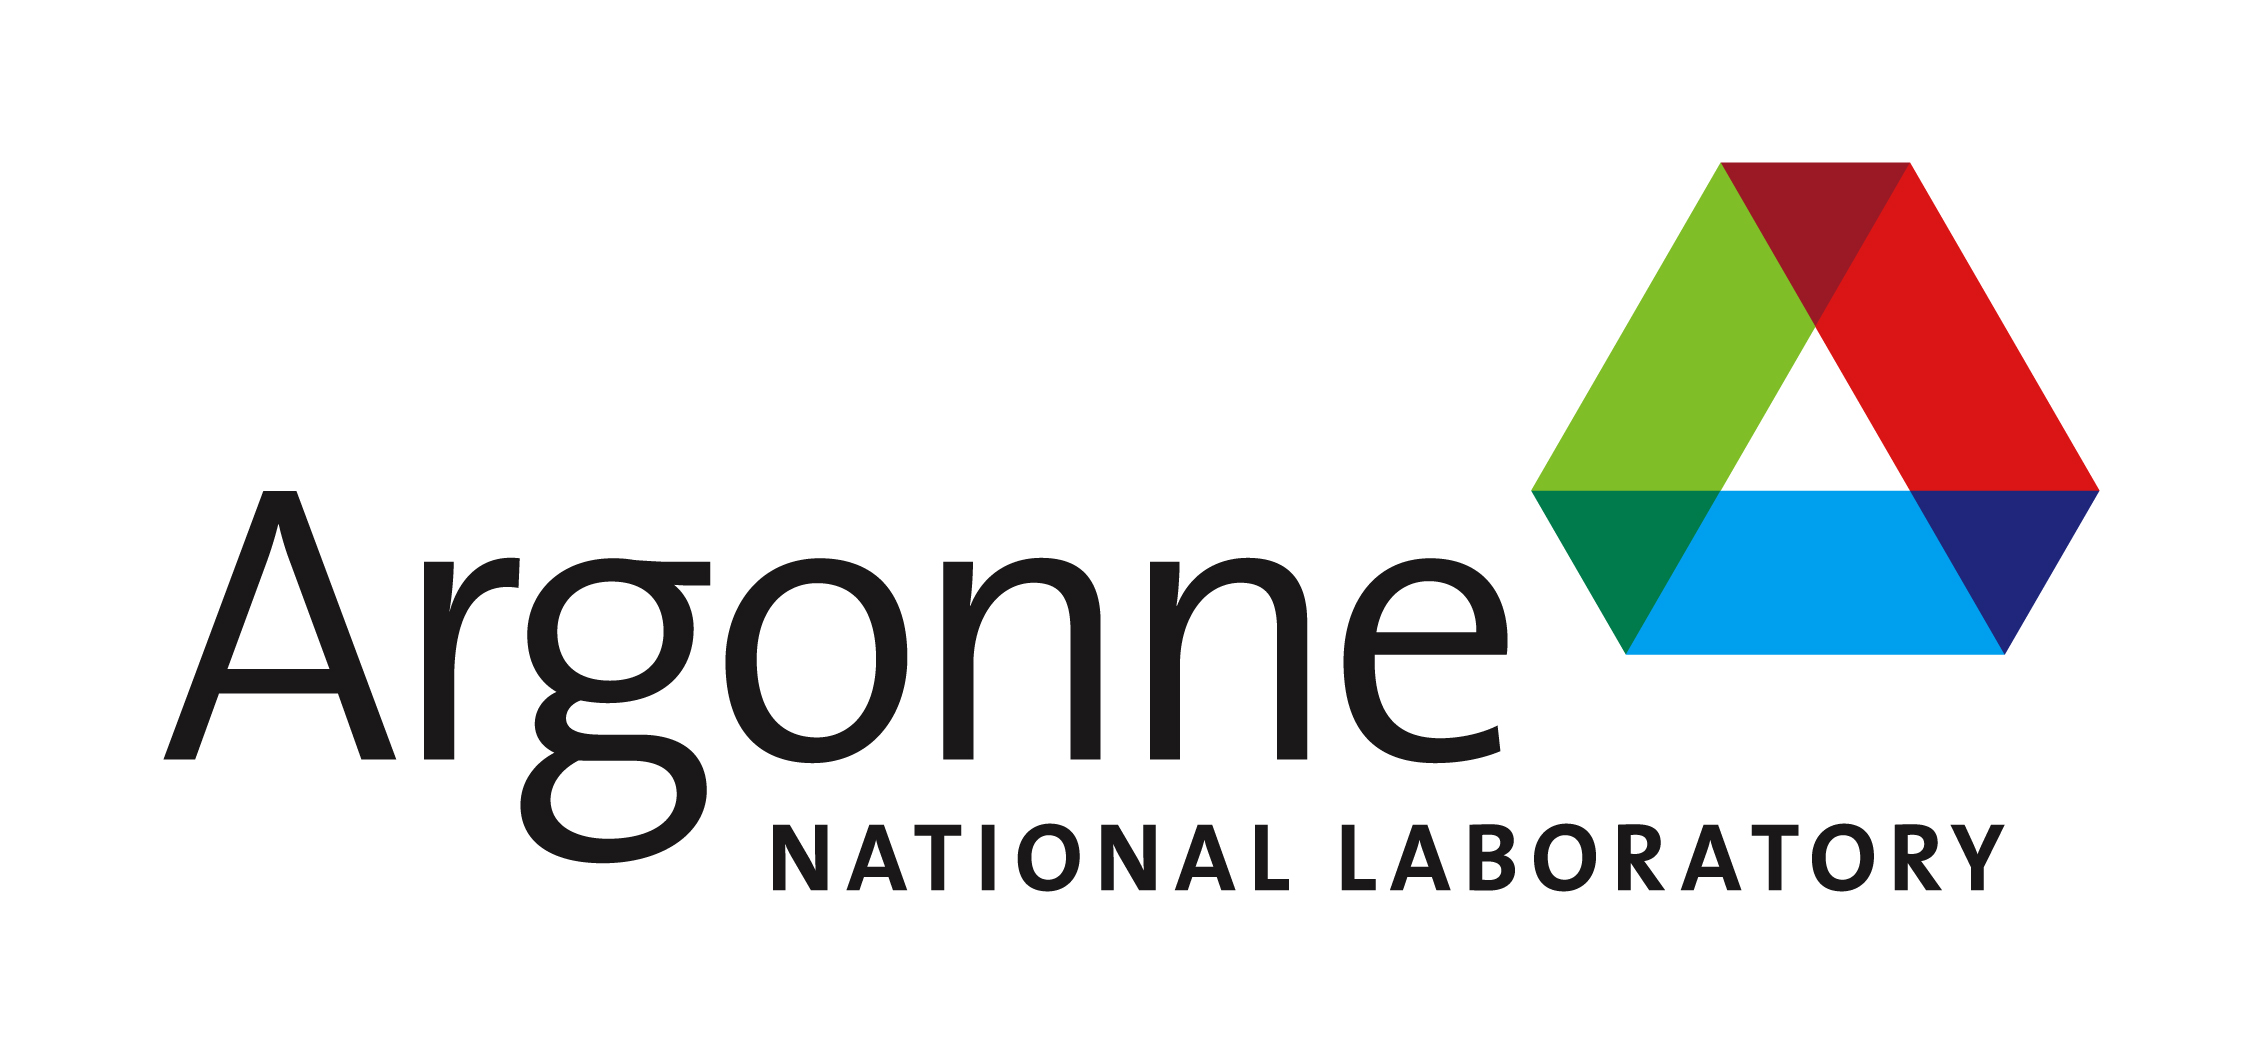 HỒ SƠ DỰ ÁN: Phòng thí nghiệm quốc gia Argonne (2015) | Sở năng lượng